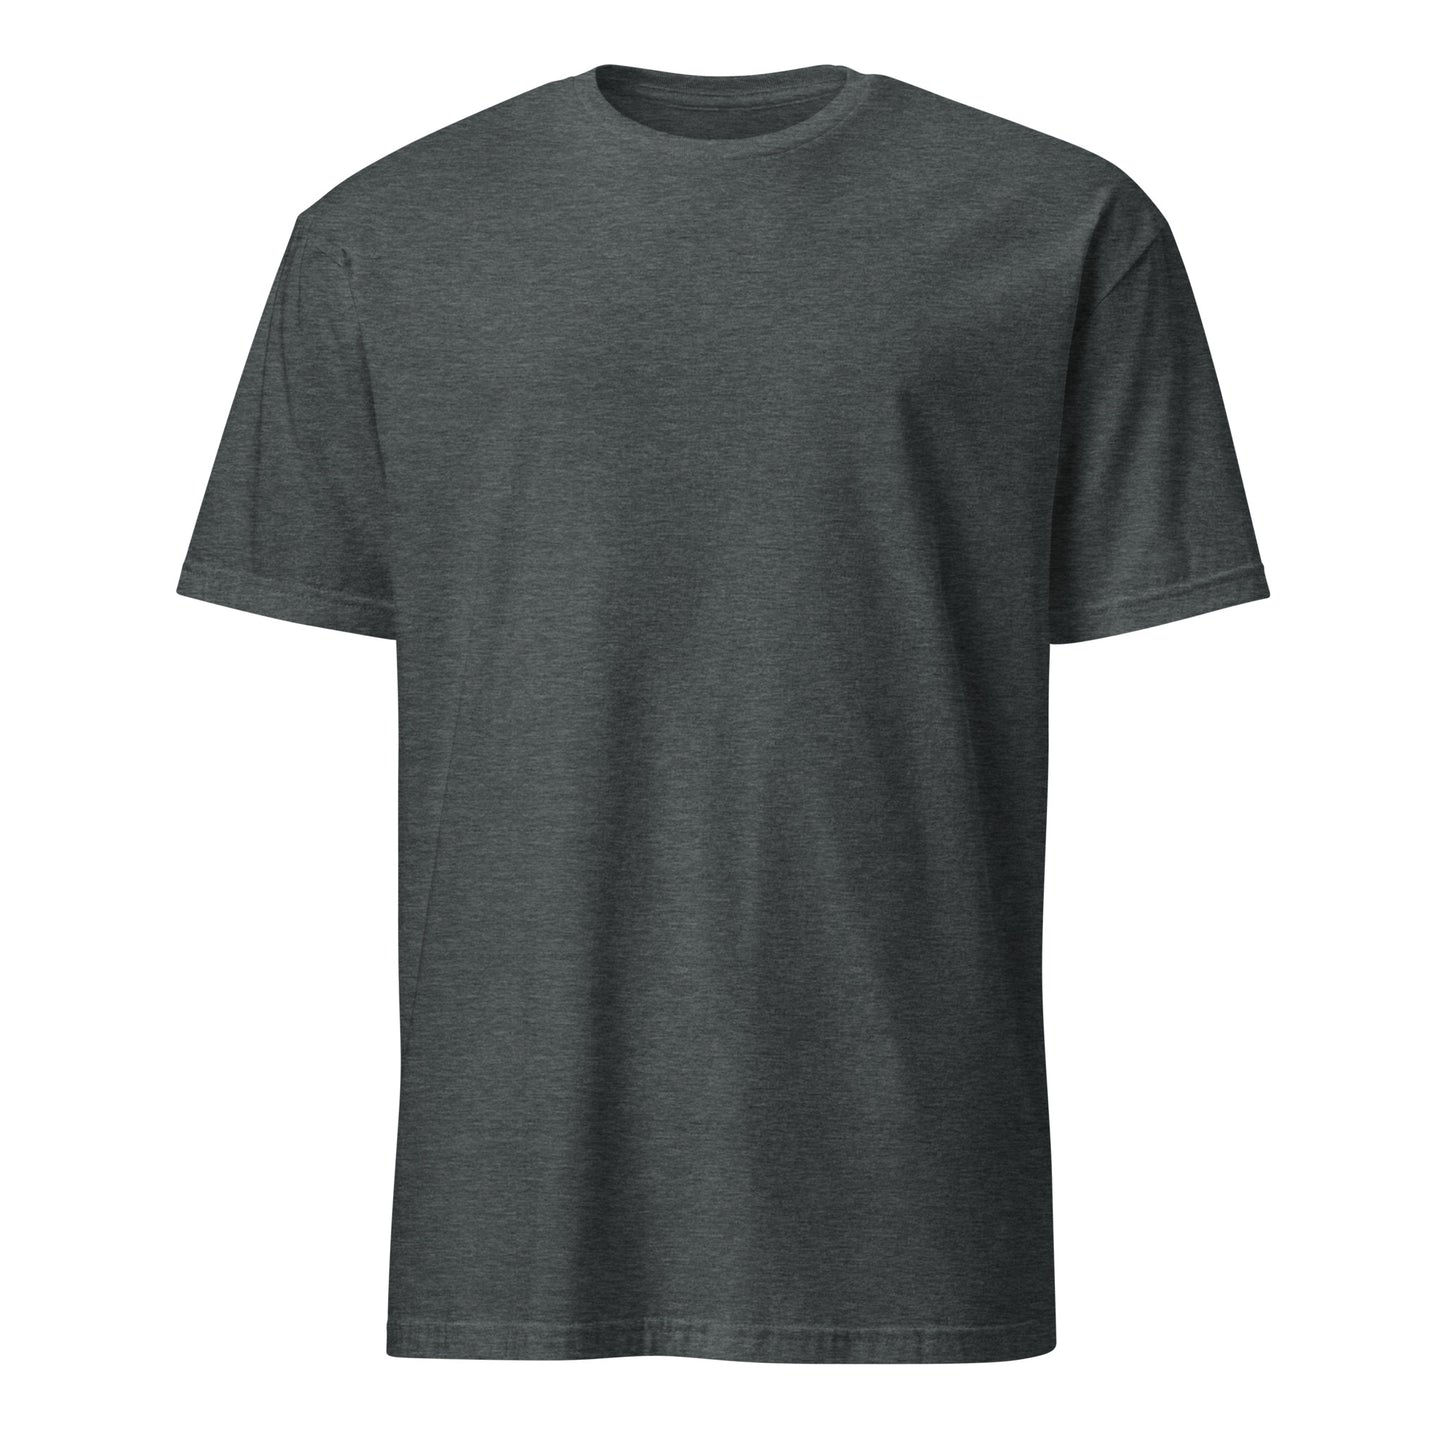 "Mylläri" unisex t-paita (pelkkä selkäprinttaus)